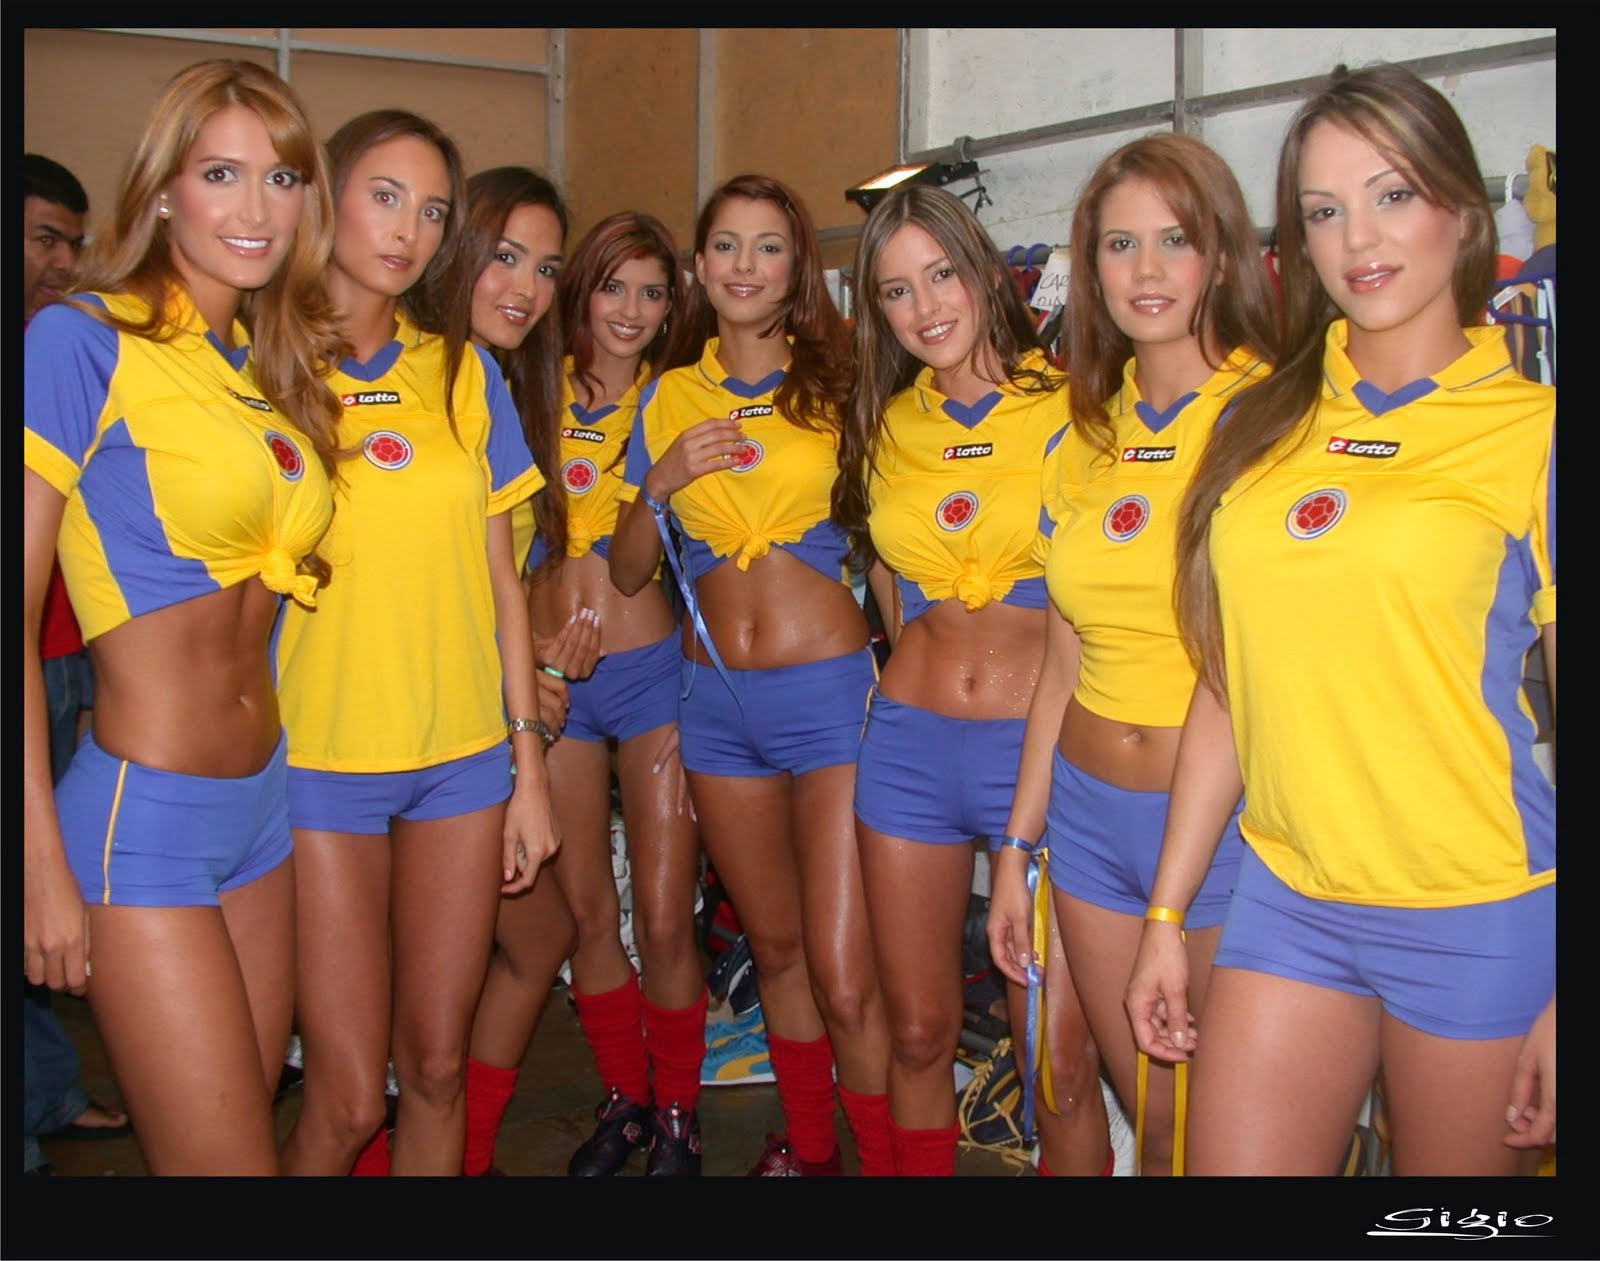 WM Brasilien 2014: sexy heissen Mädchen-Fußball-Fan, schöne Frau Unterstützer der Welt. Ziemlich Amateur girls, Bilder und Fotos Colombia colombiana